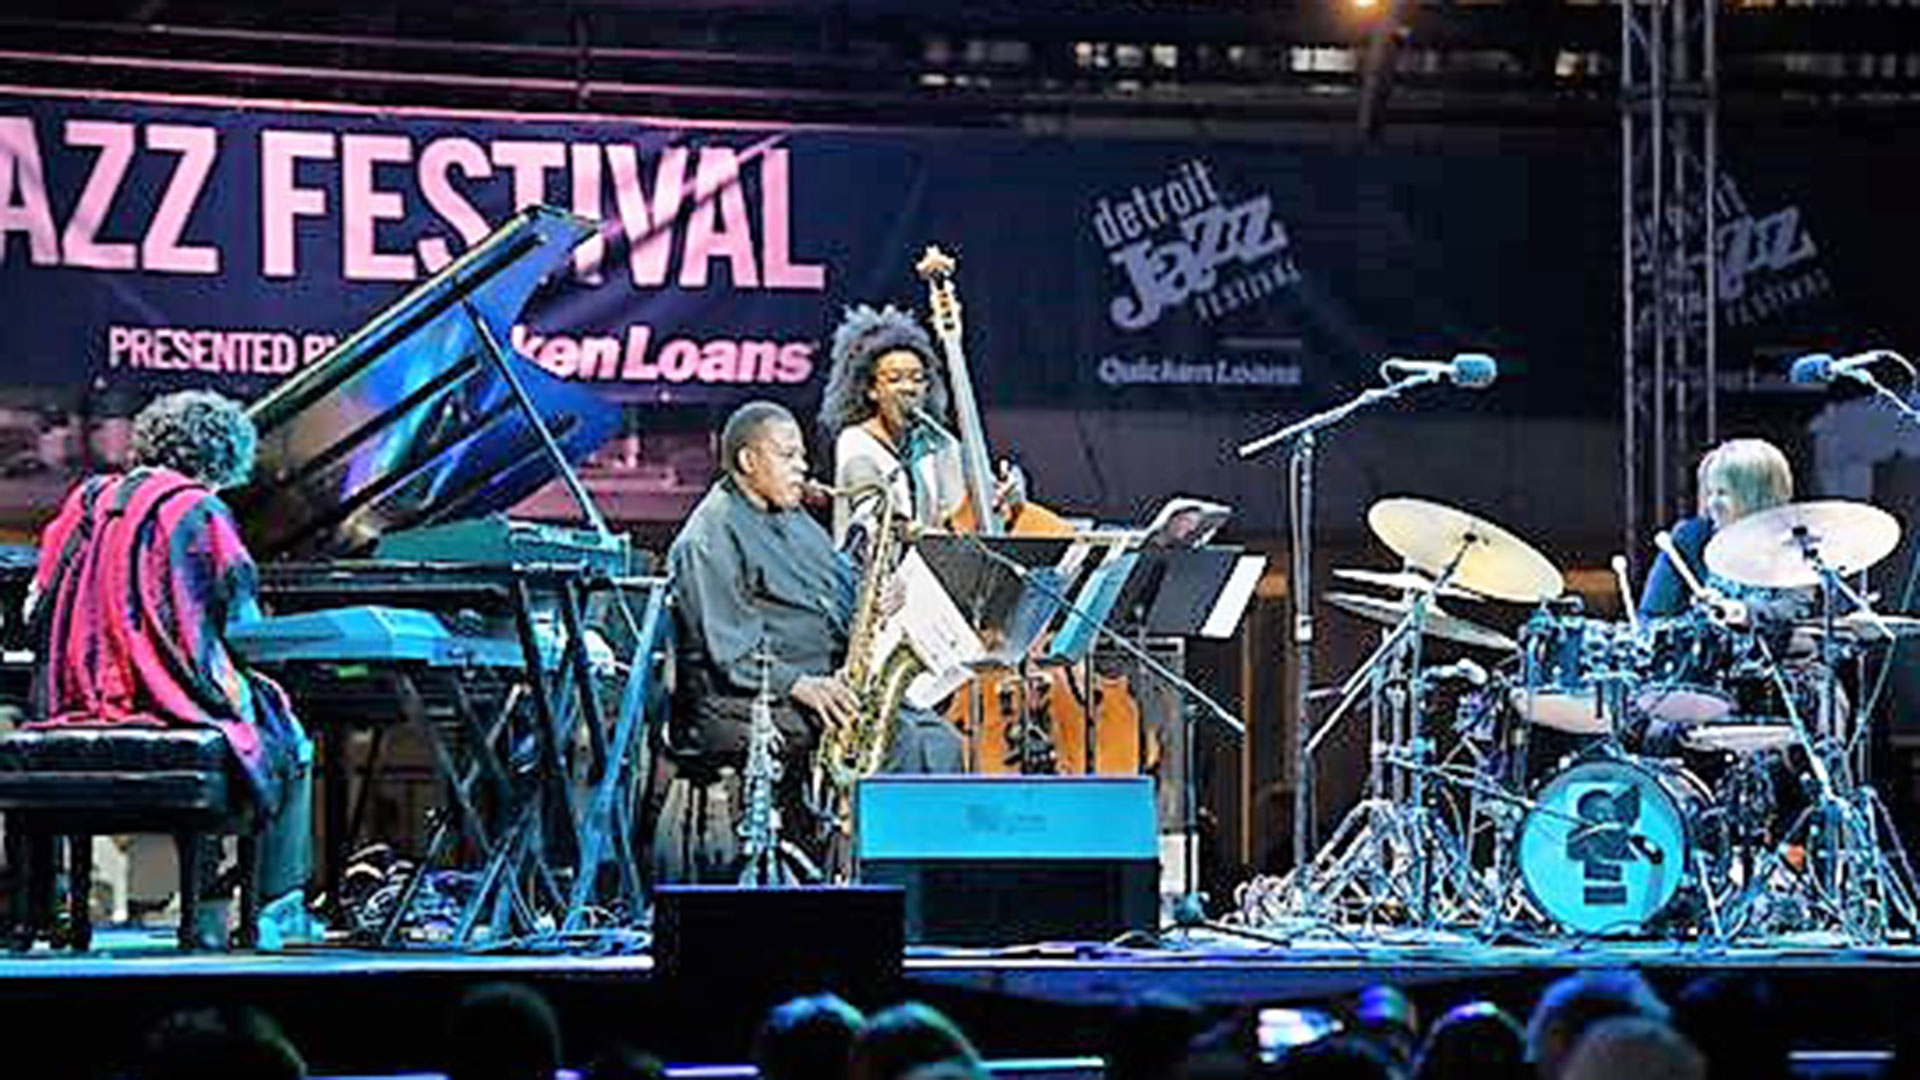 Leo Genovese con Wayne Shorter, Esperanza Spalding y Terri Lyne Carrington en el Detroit Festival.